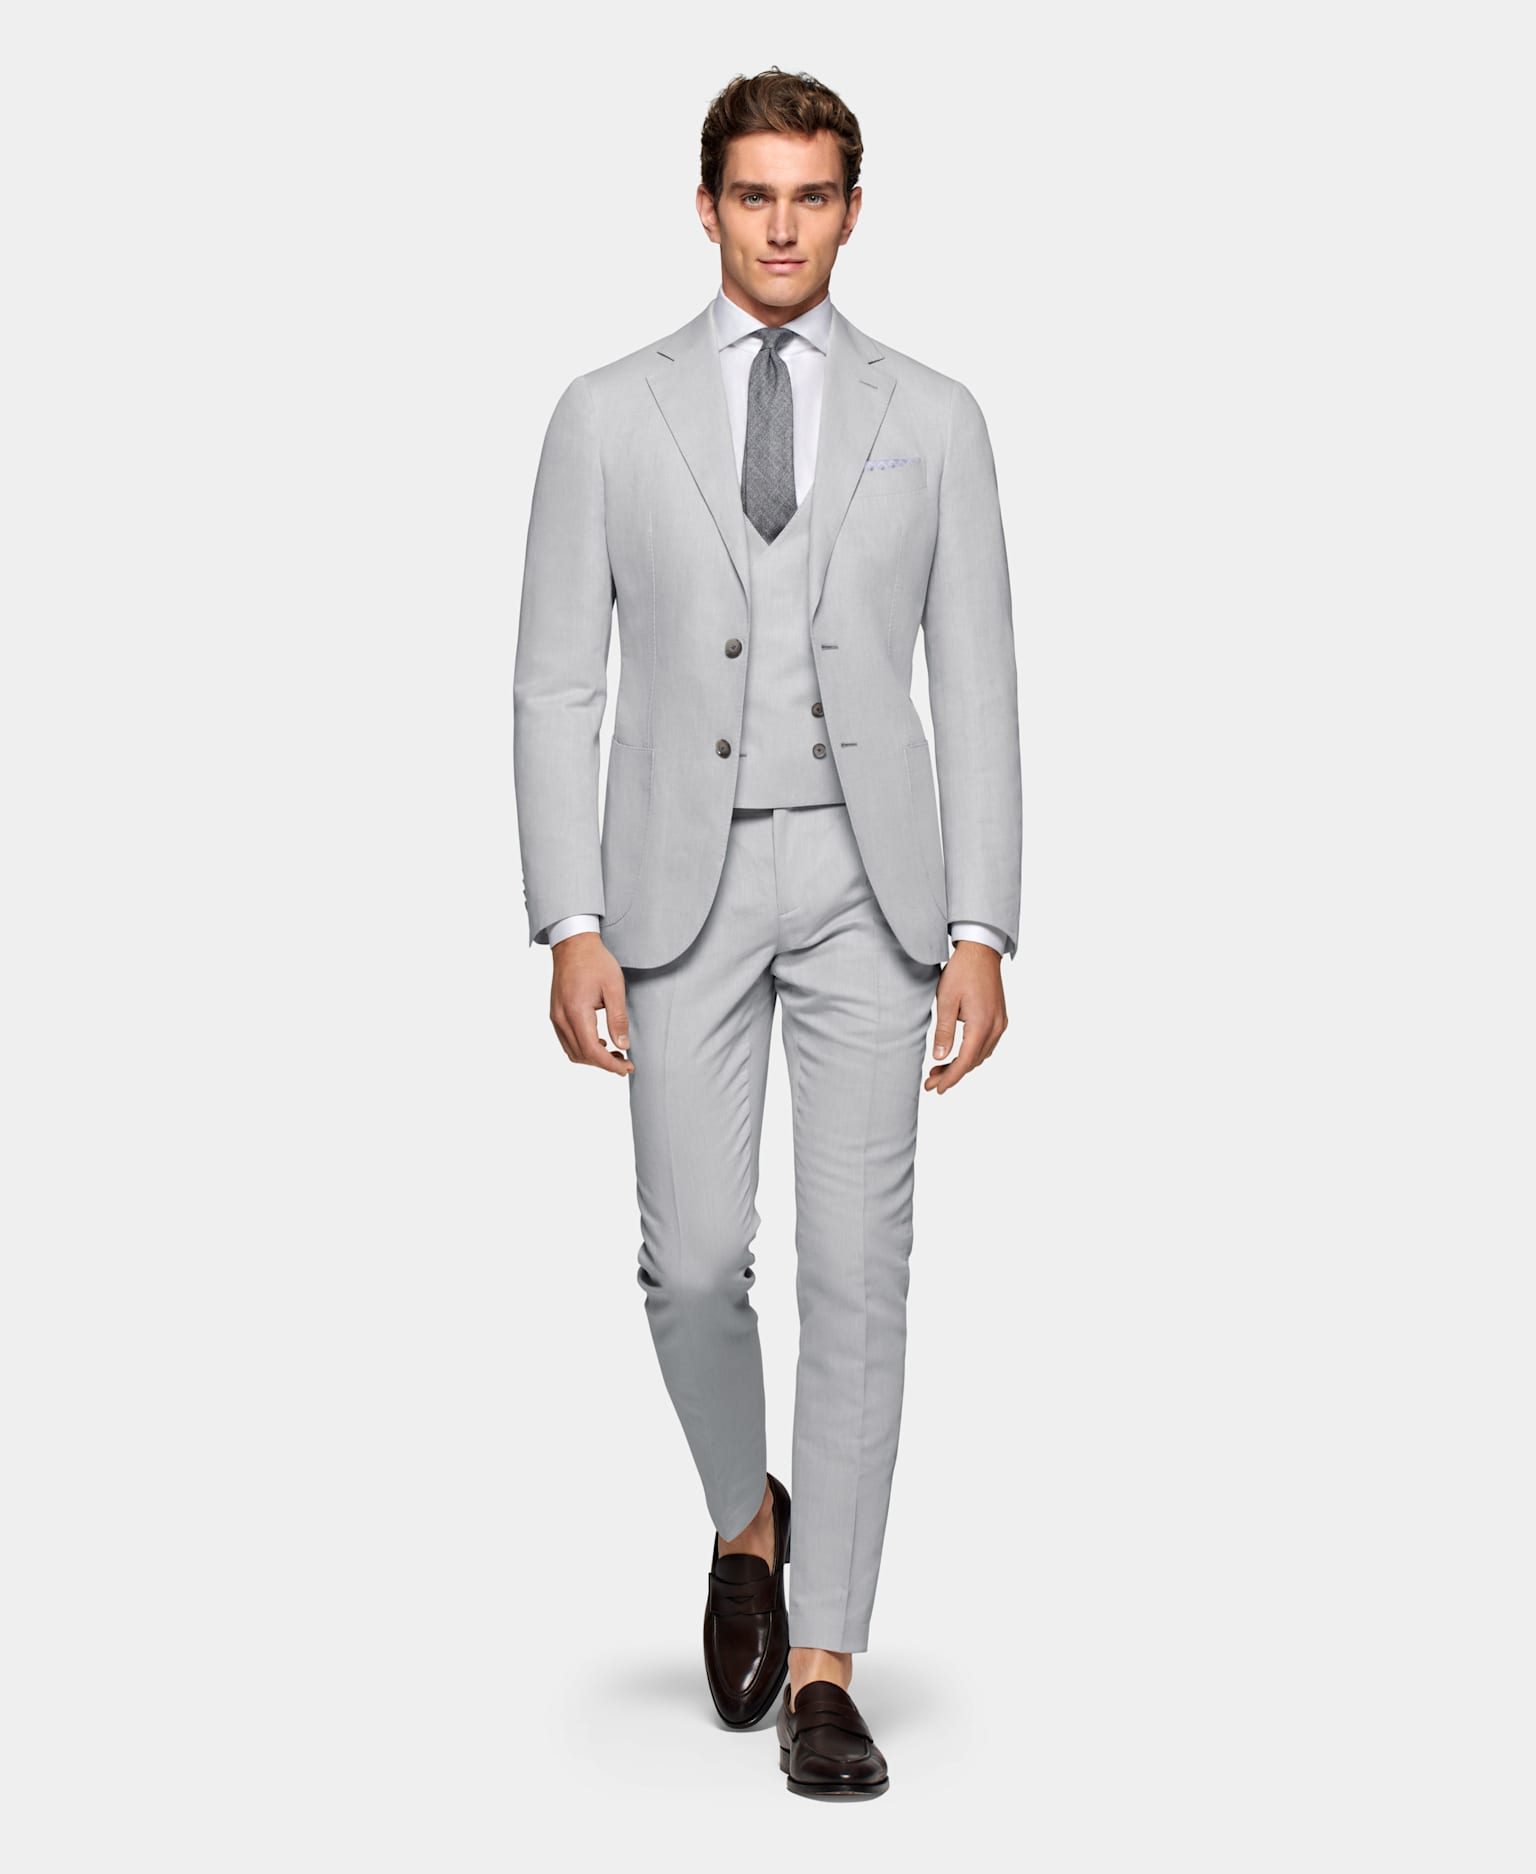 A cotton linen grey 3 piece suit for a formal attire.